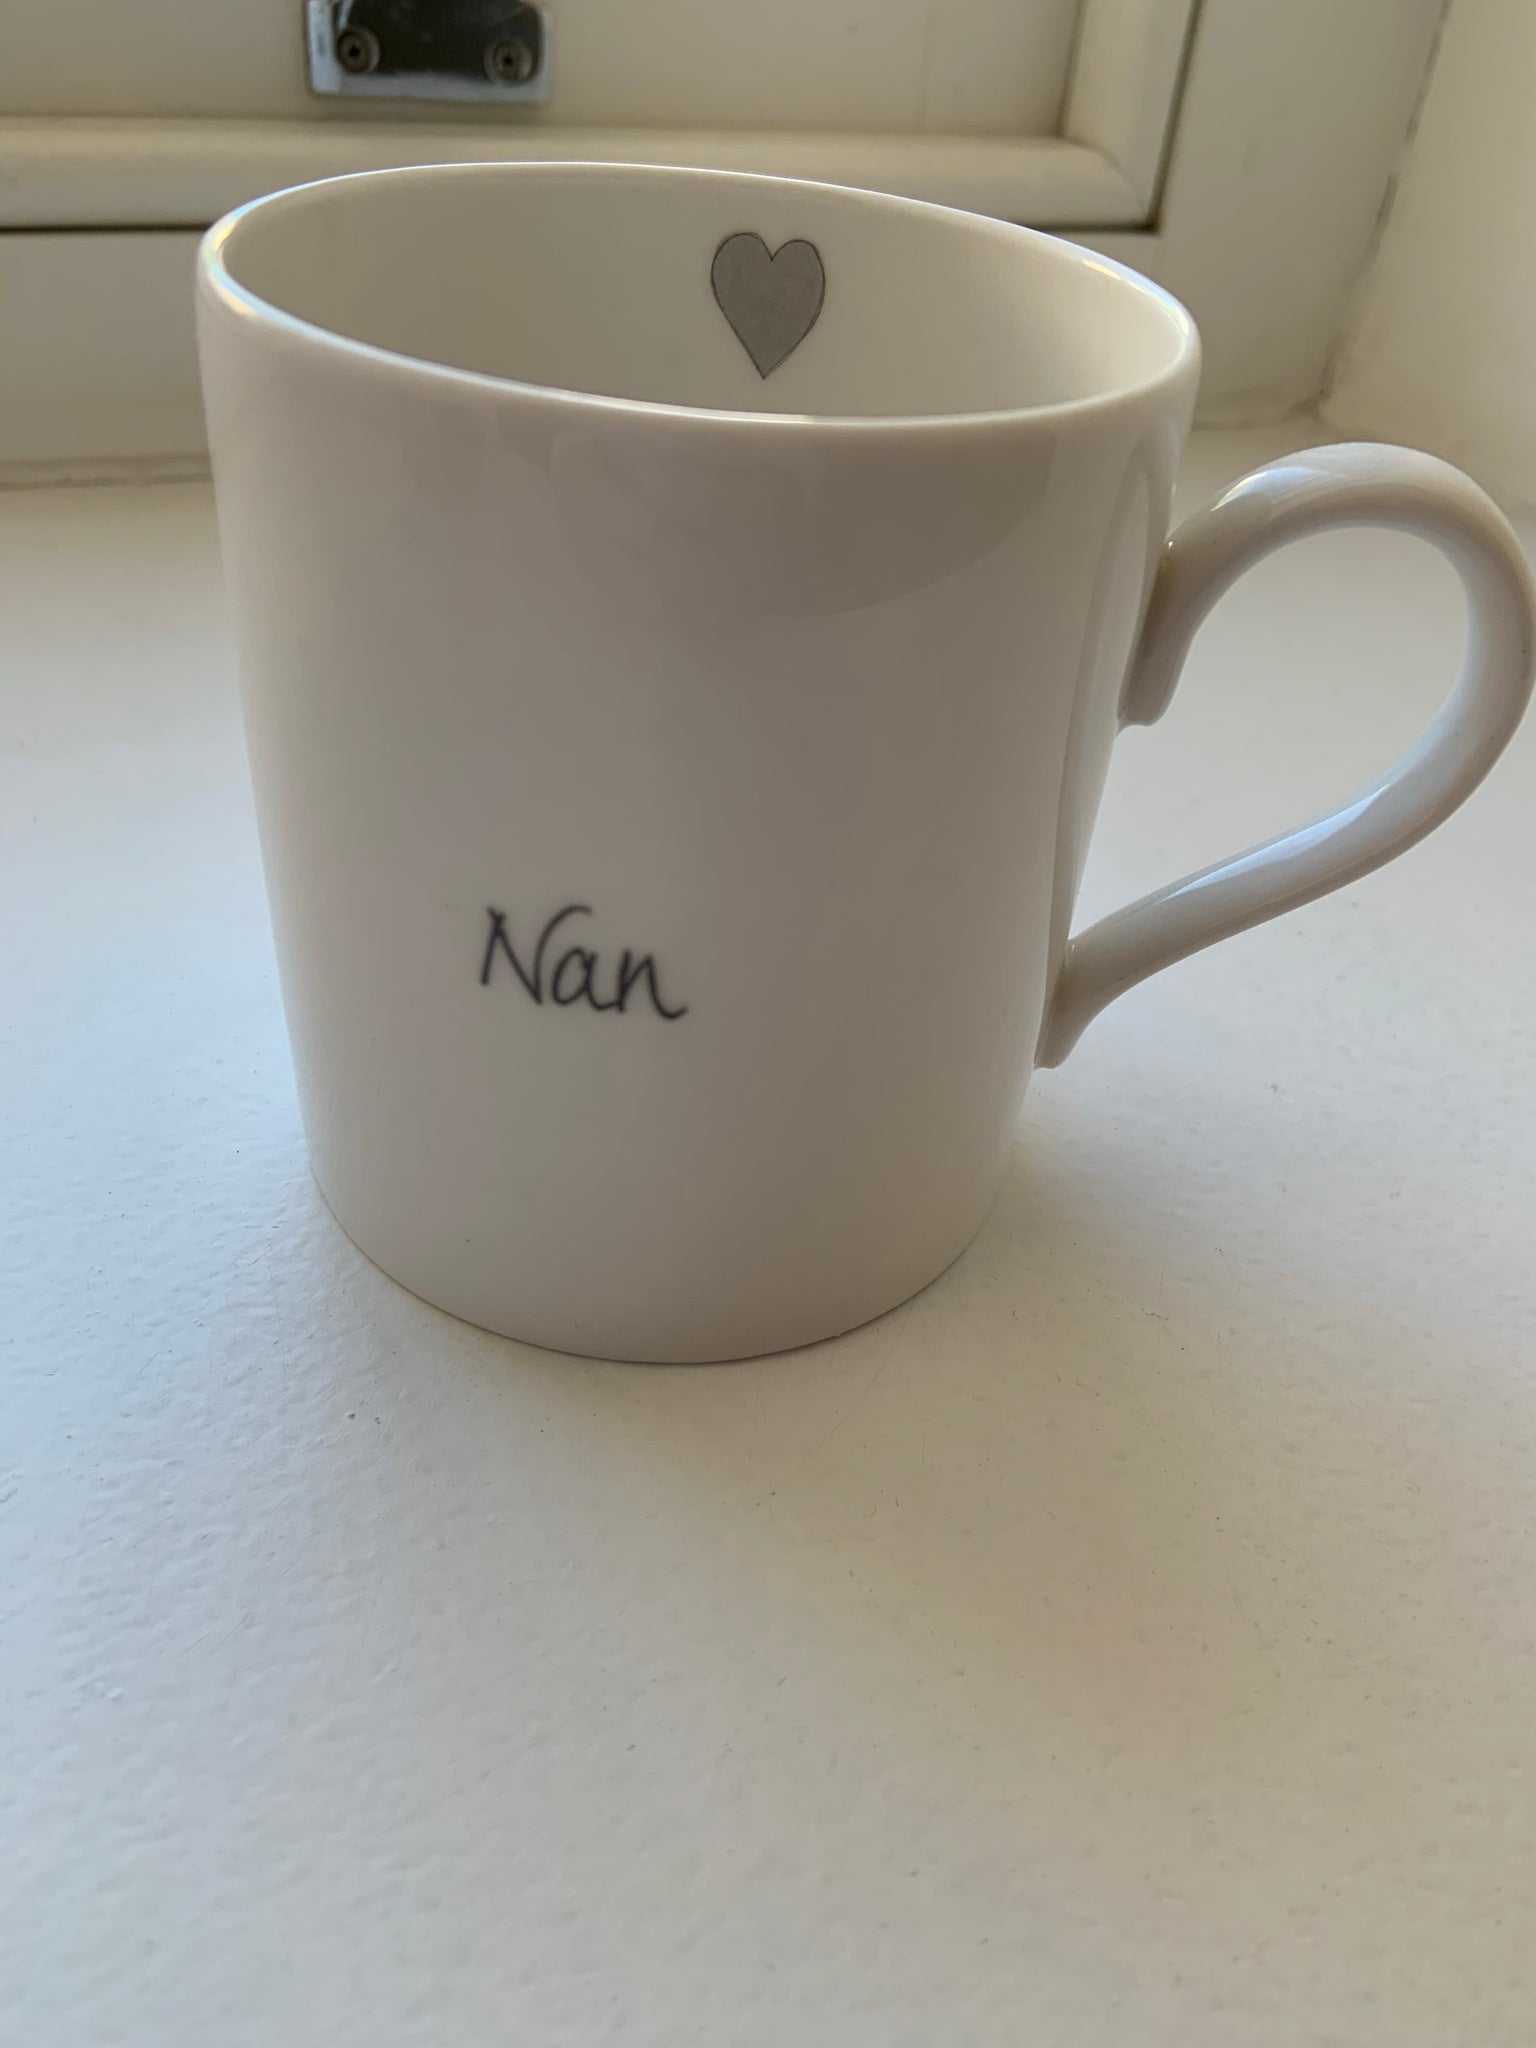 Welsh mug - Nan